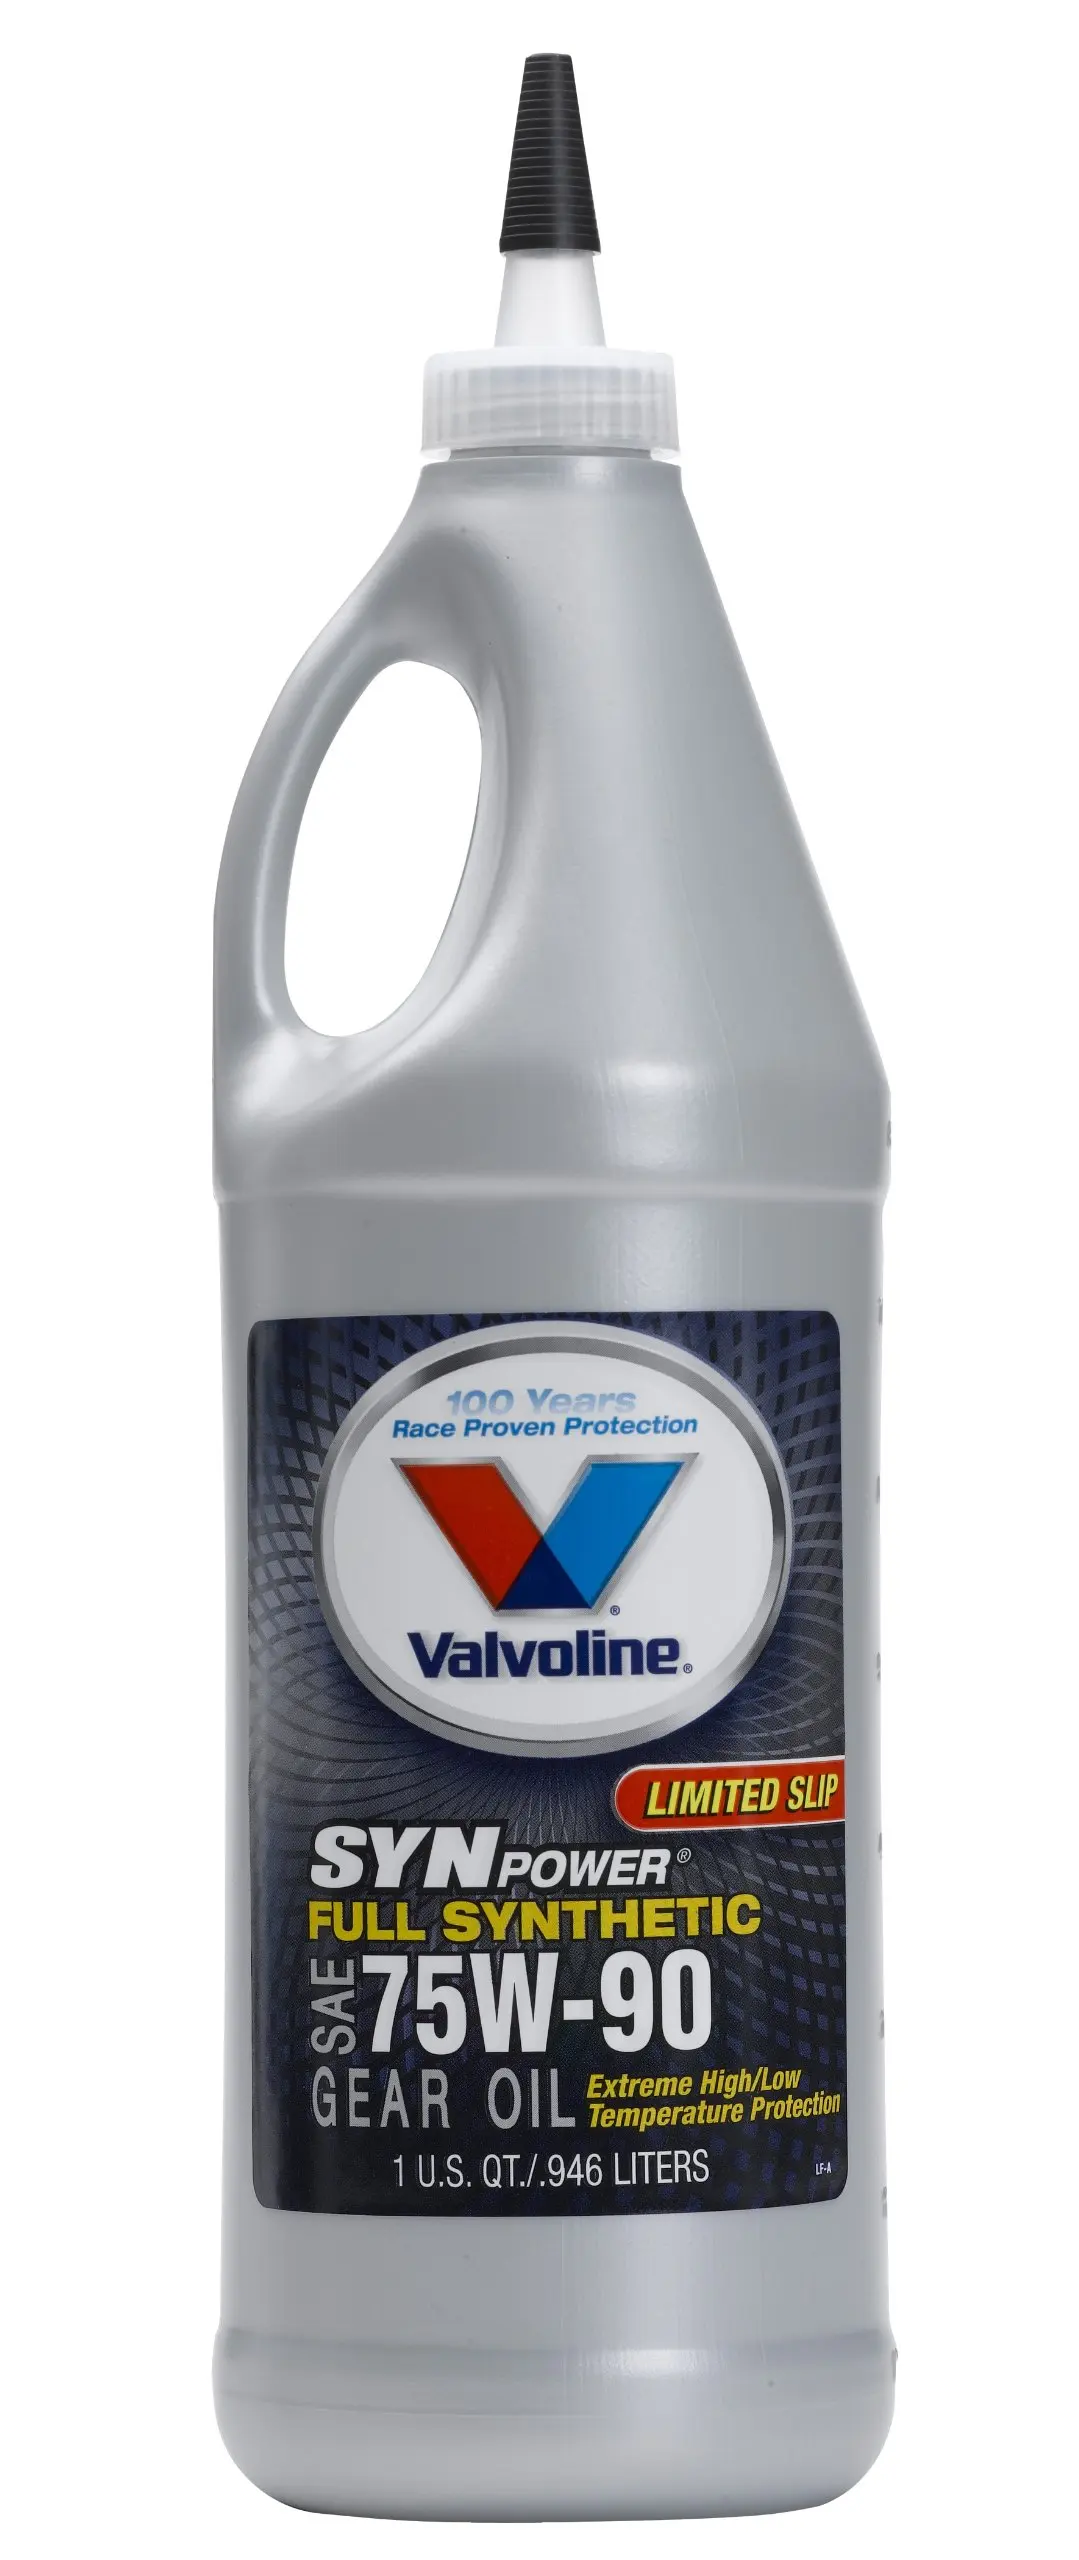 Трансмиссионные масла valvoline. Valvoline 75w140. Valvoline Gear Oil 75w-90. Масло 75w90 трансмиссионное Valvoline. Valvoline масло Gear Oil.